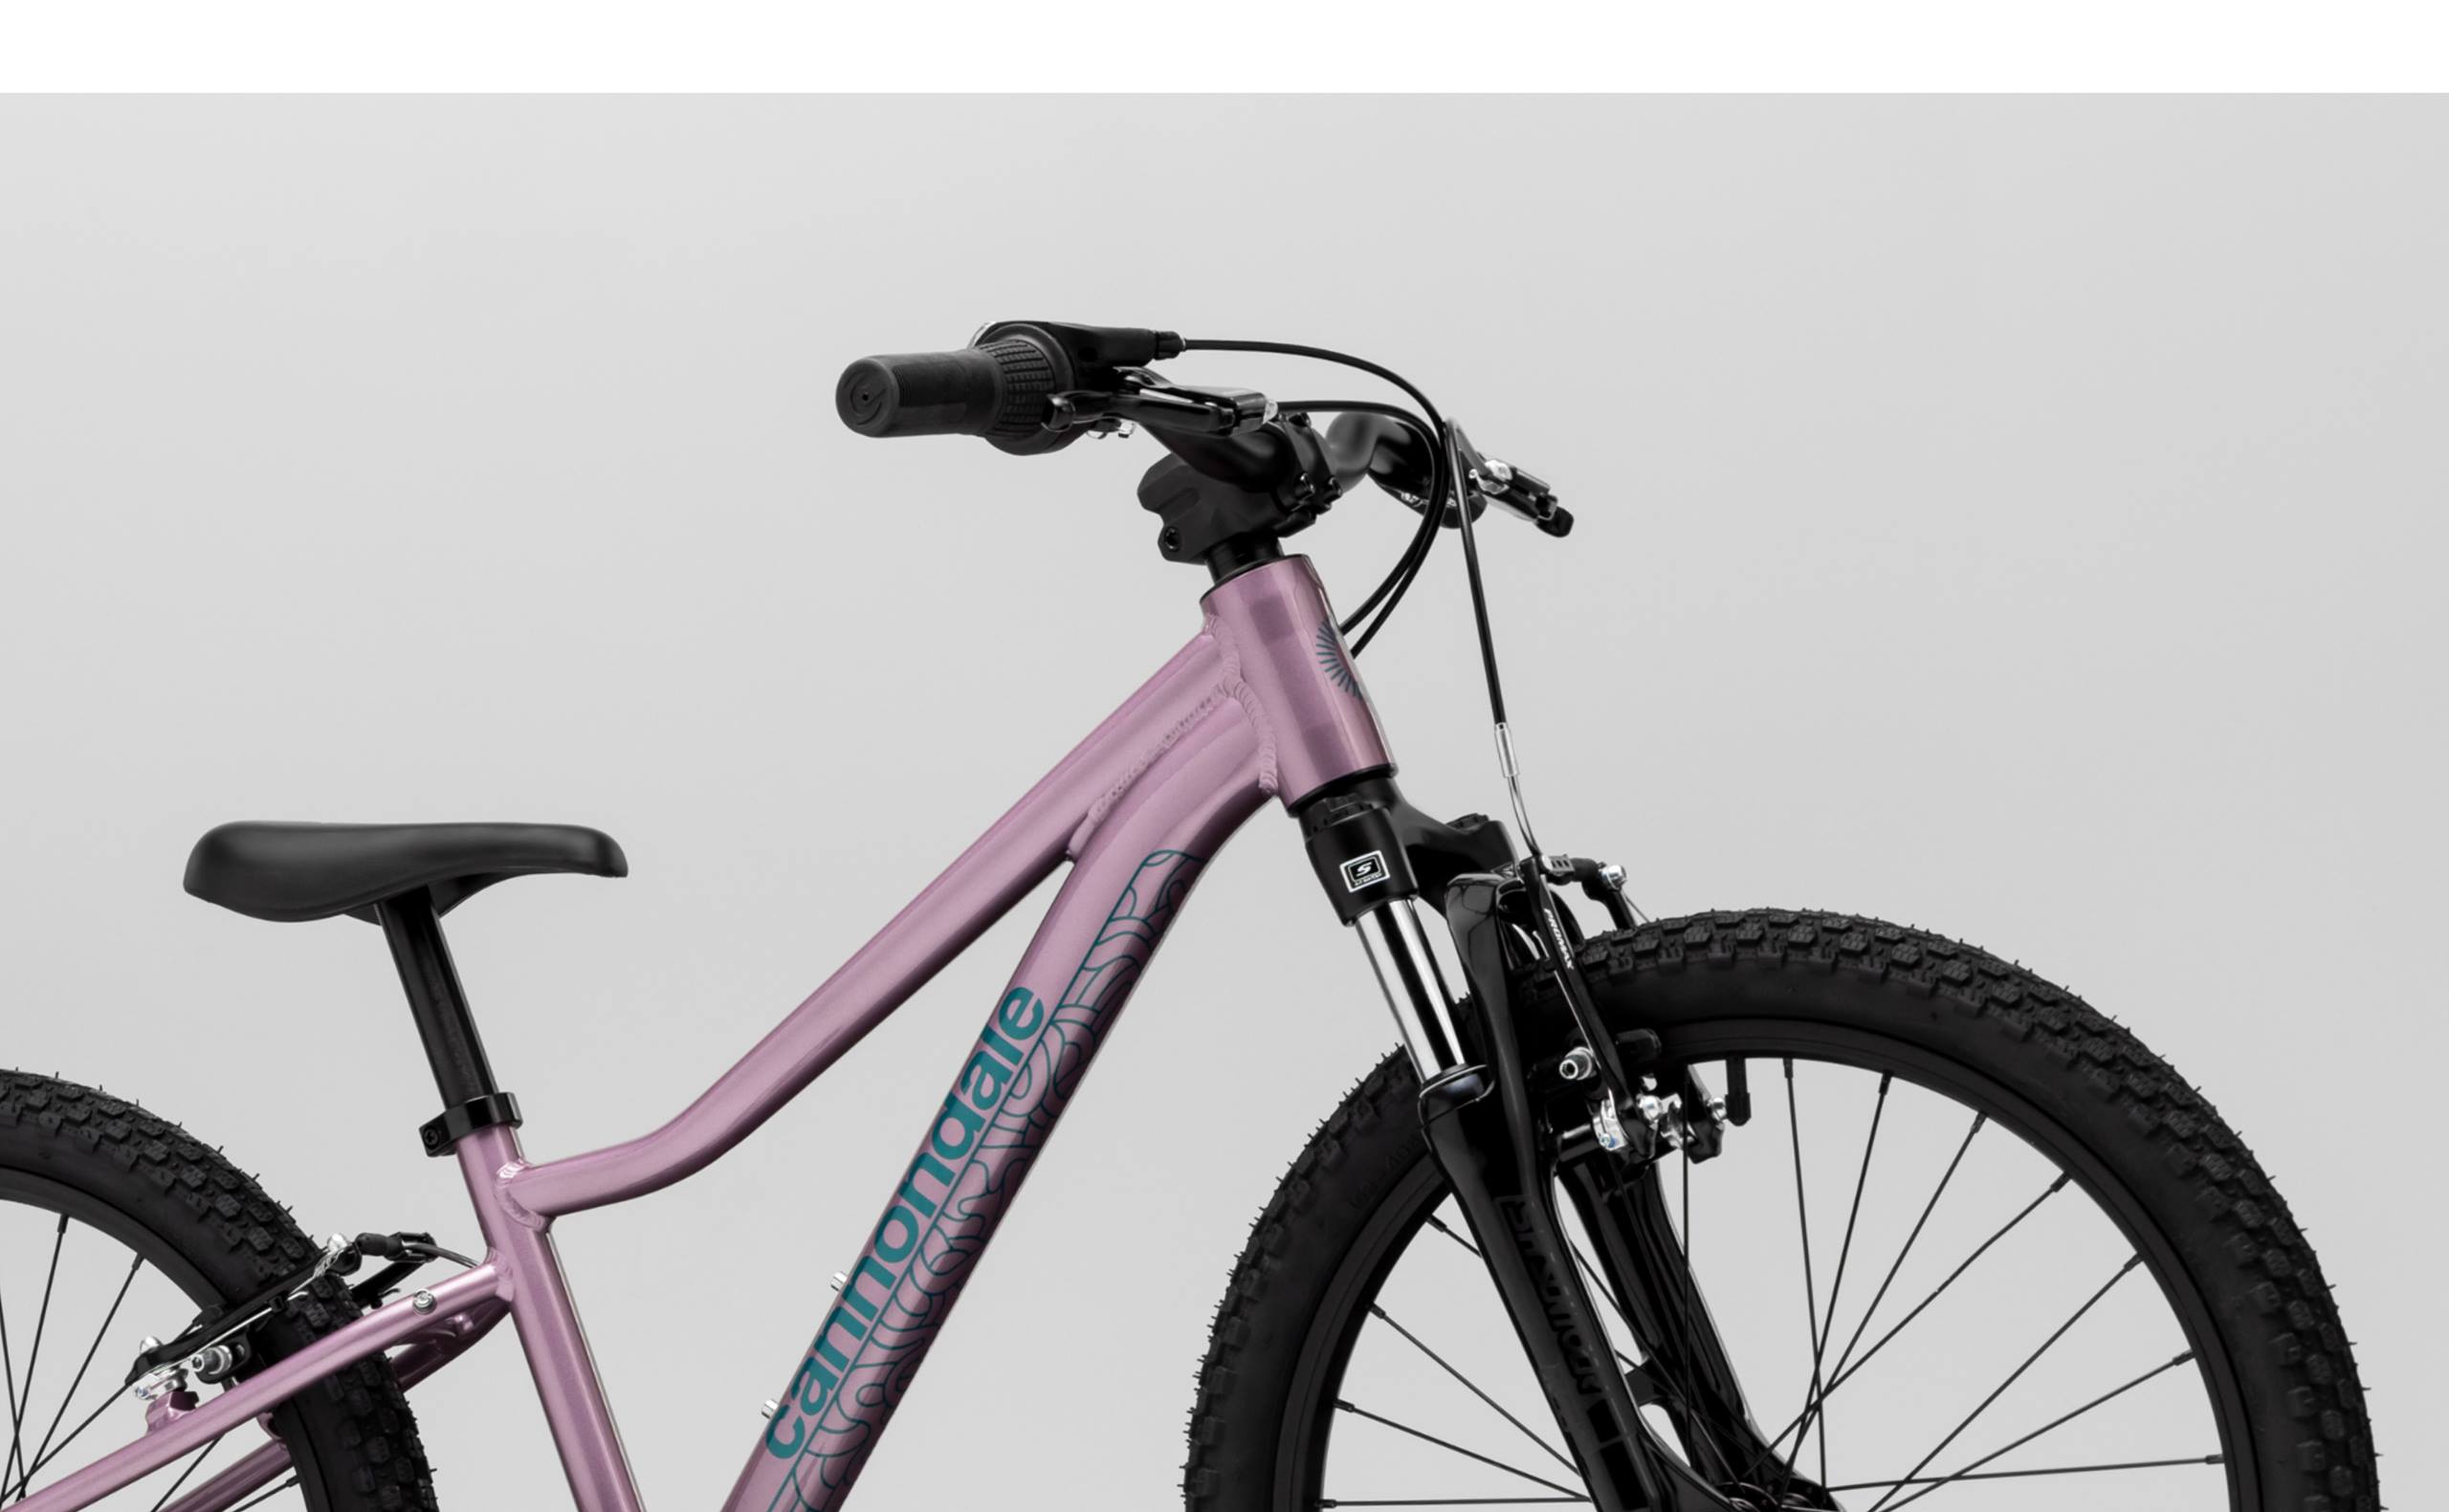 Bicicleta de niña Cruiser 20 pulgadas by Lux4kids